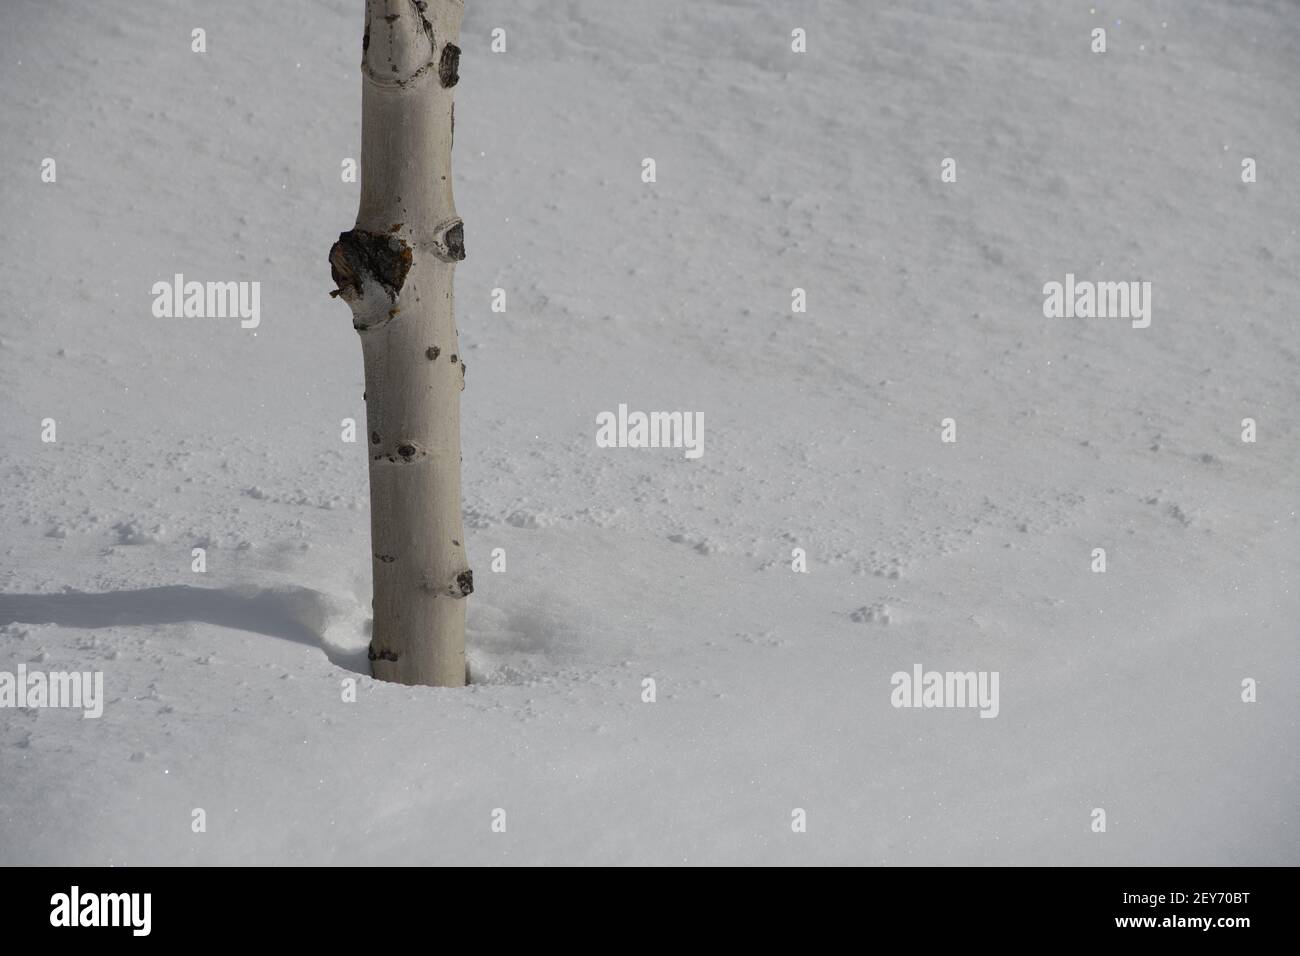 Nahaufnahme des Stammes der Birke in tiefem Schnee im Winter Wetter kaltes Klima Neuschnee fallen leeren Raum für Typ horizontalen Winter-Format Hintergrund Stockfoto